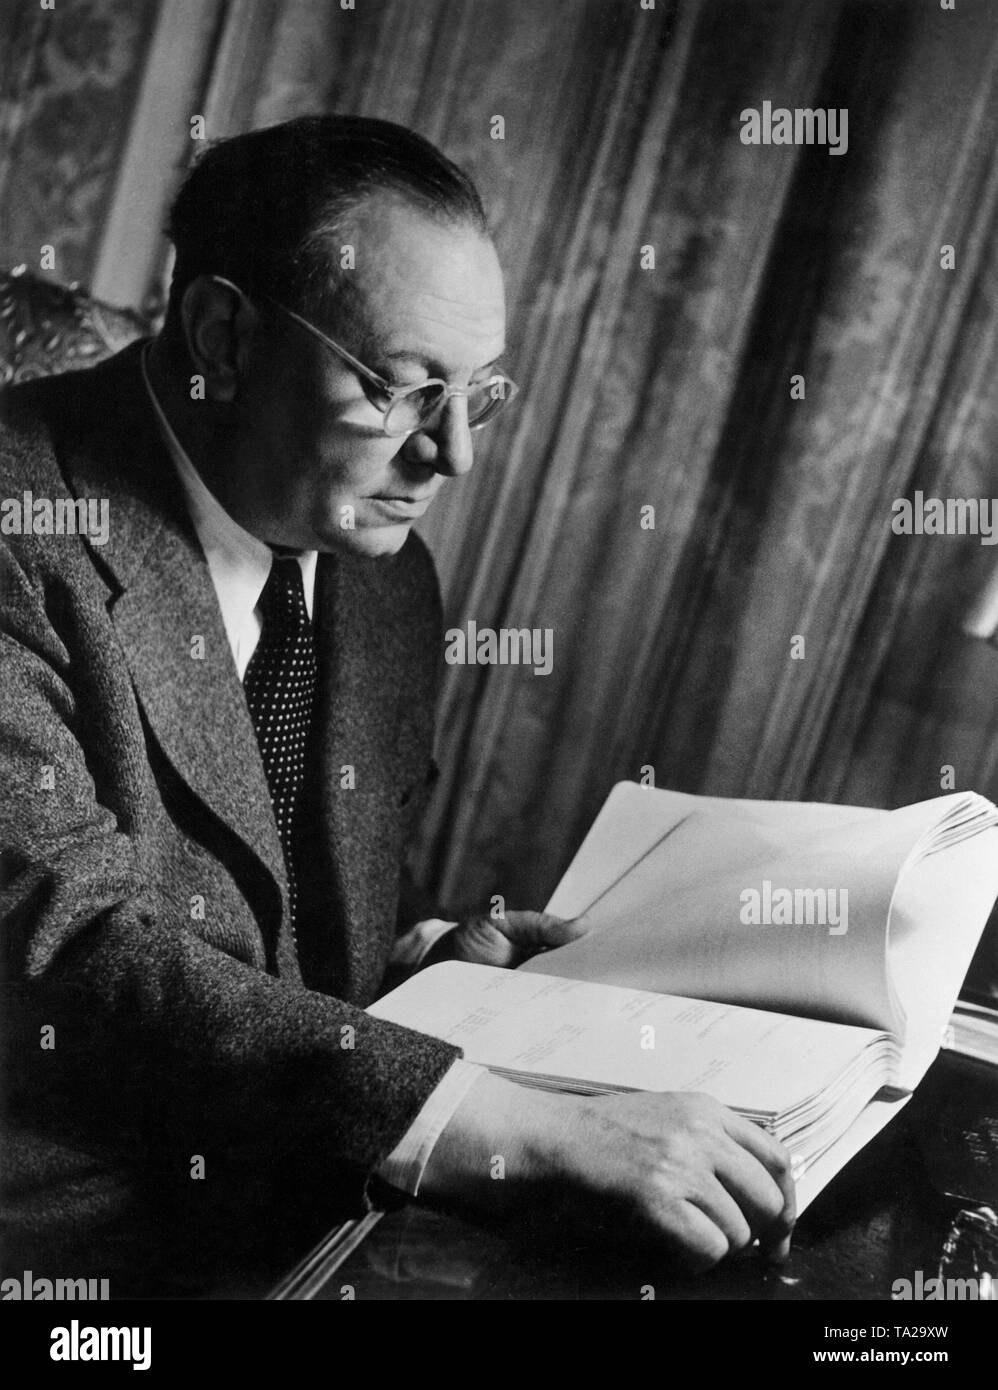 Emil Jannings (1884-1950), acteur de cinéma et de théâtre allemand. Photo non datée, probablement à la fin des années 30. Banque D'Images